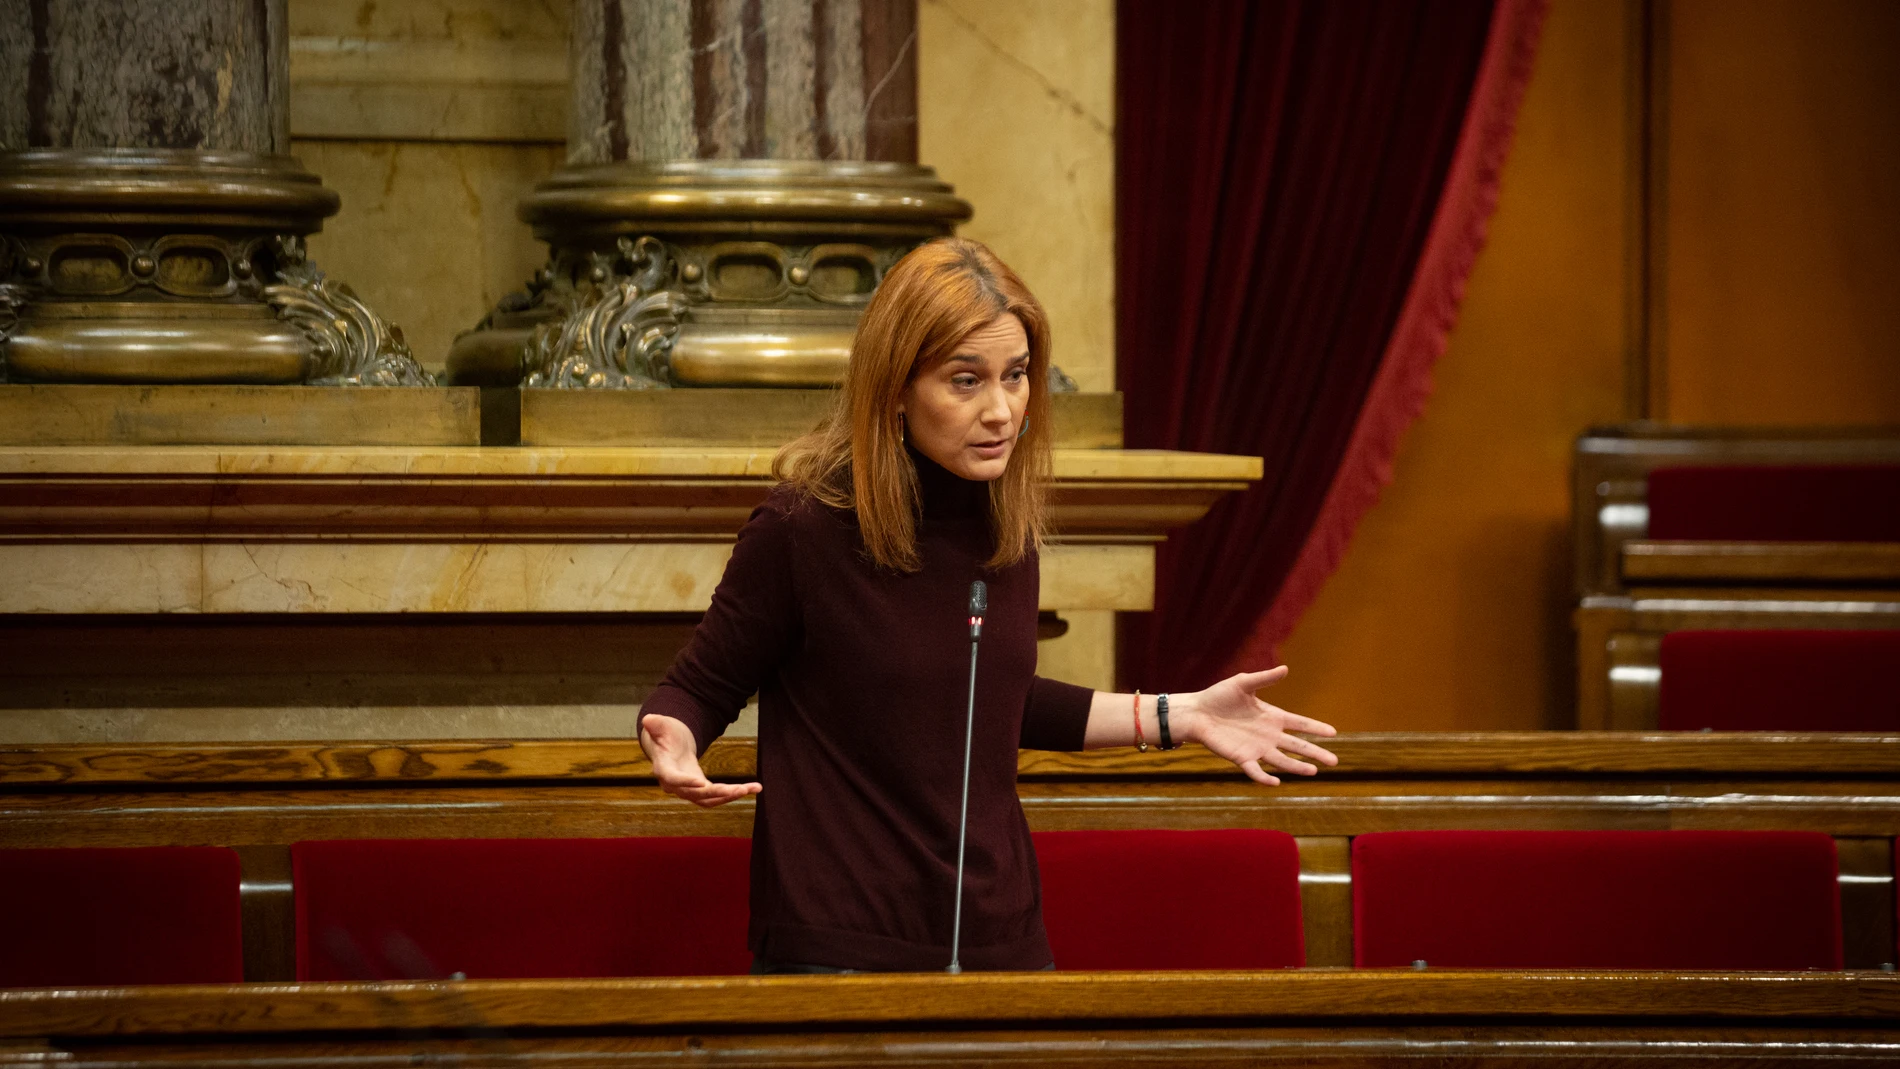 La presidenta de En Comú Podem (CatECP) en el Parlament de Catalunya, Jéssica Albiach, interviene durante una sesión plenaria en el Parlament.